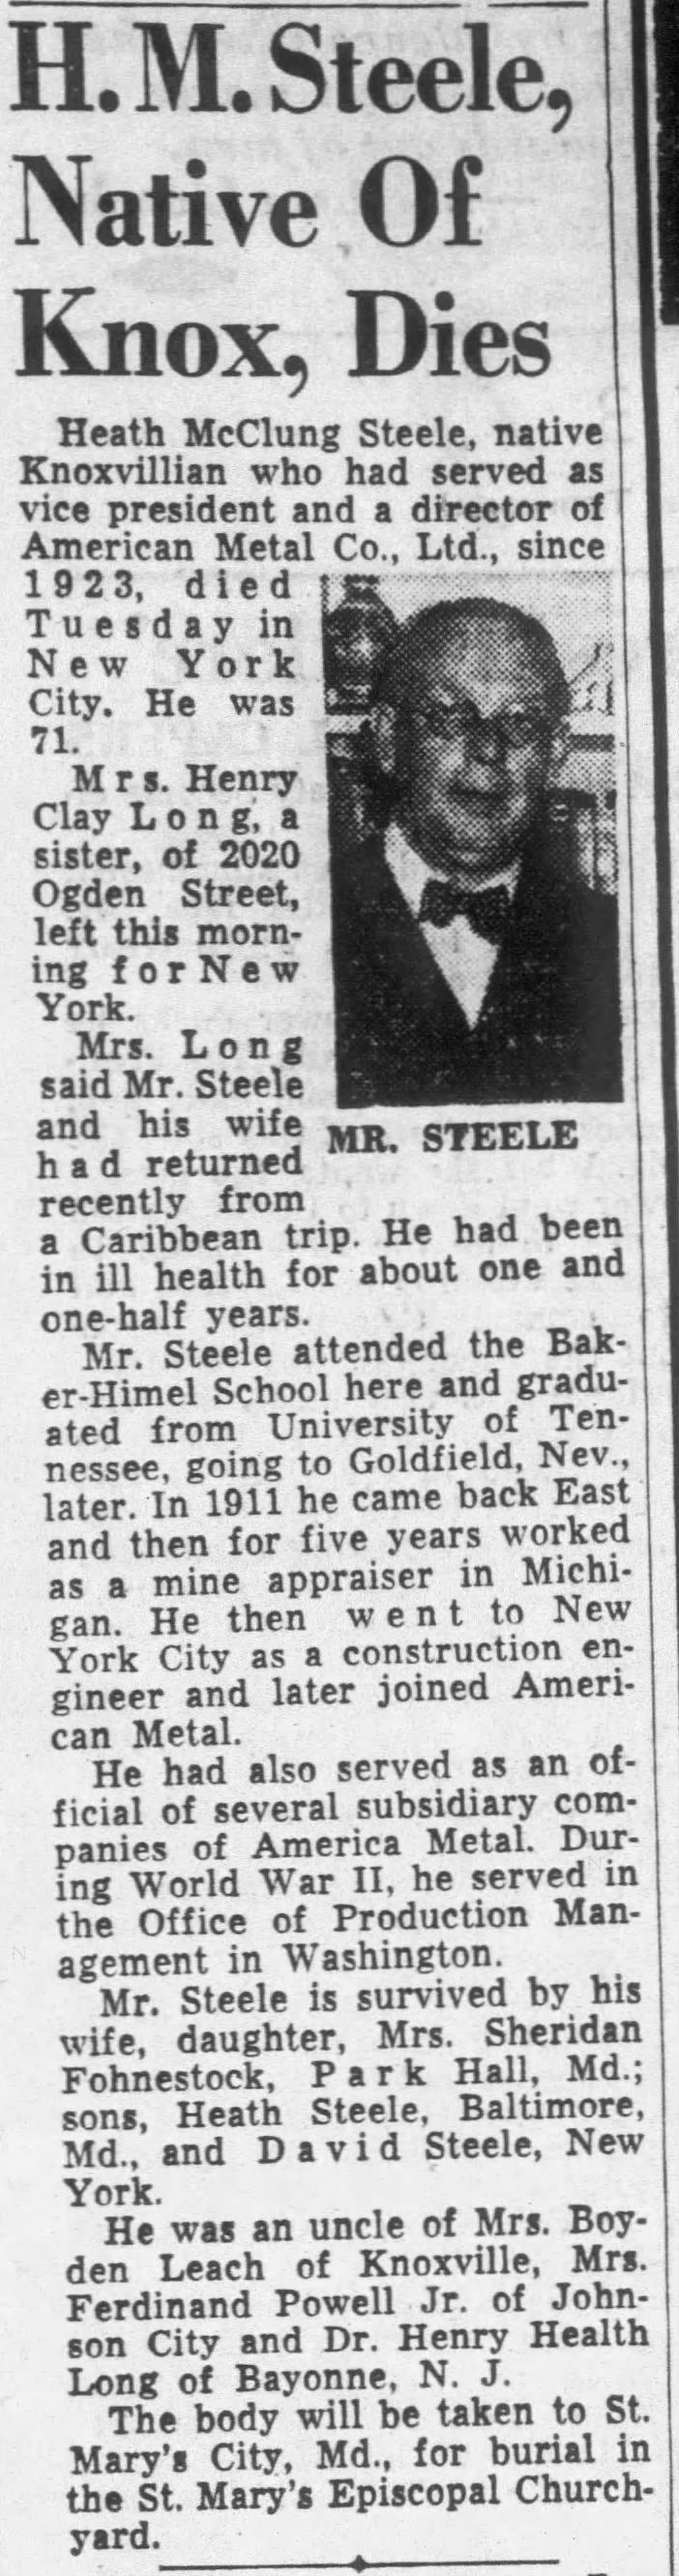 H. M. Steele, Native Of Knox, Dies